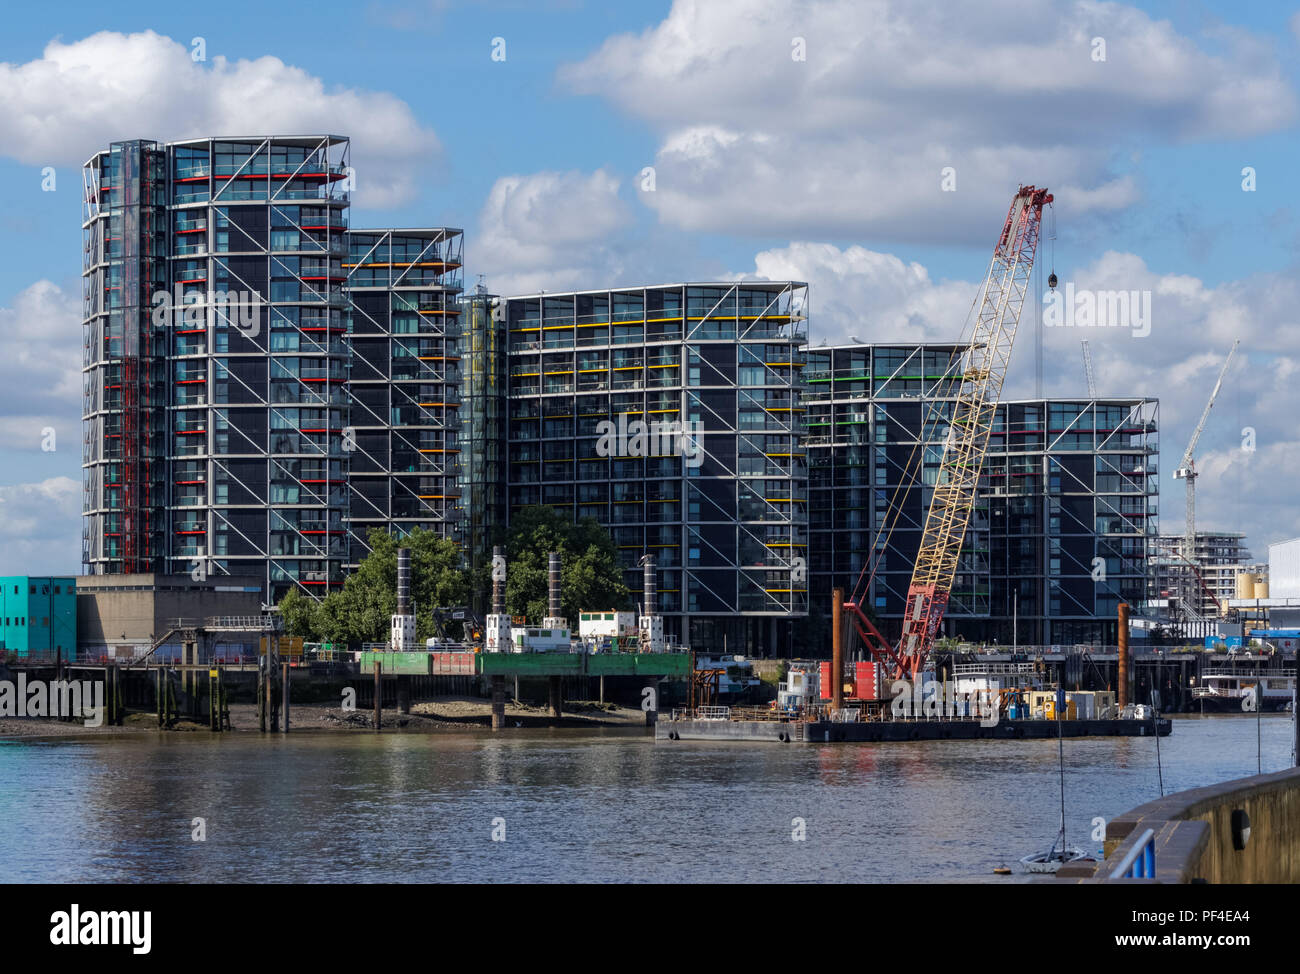 Riverlight sviluppo residenziale a Nine Elms dal fiume Thames, London, England, Regno Unito, Gran Bretagna Foto Stock